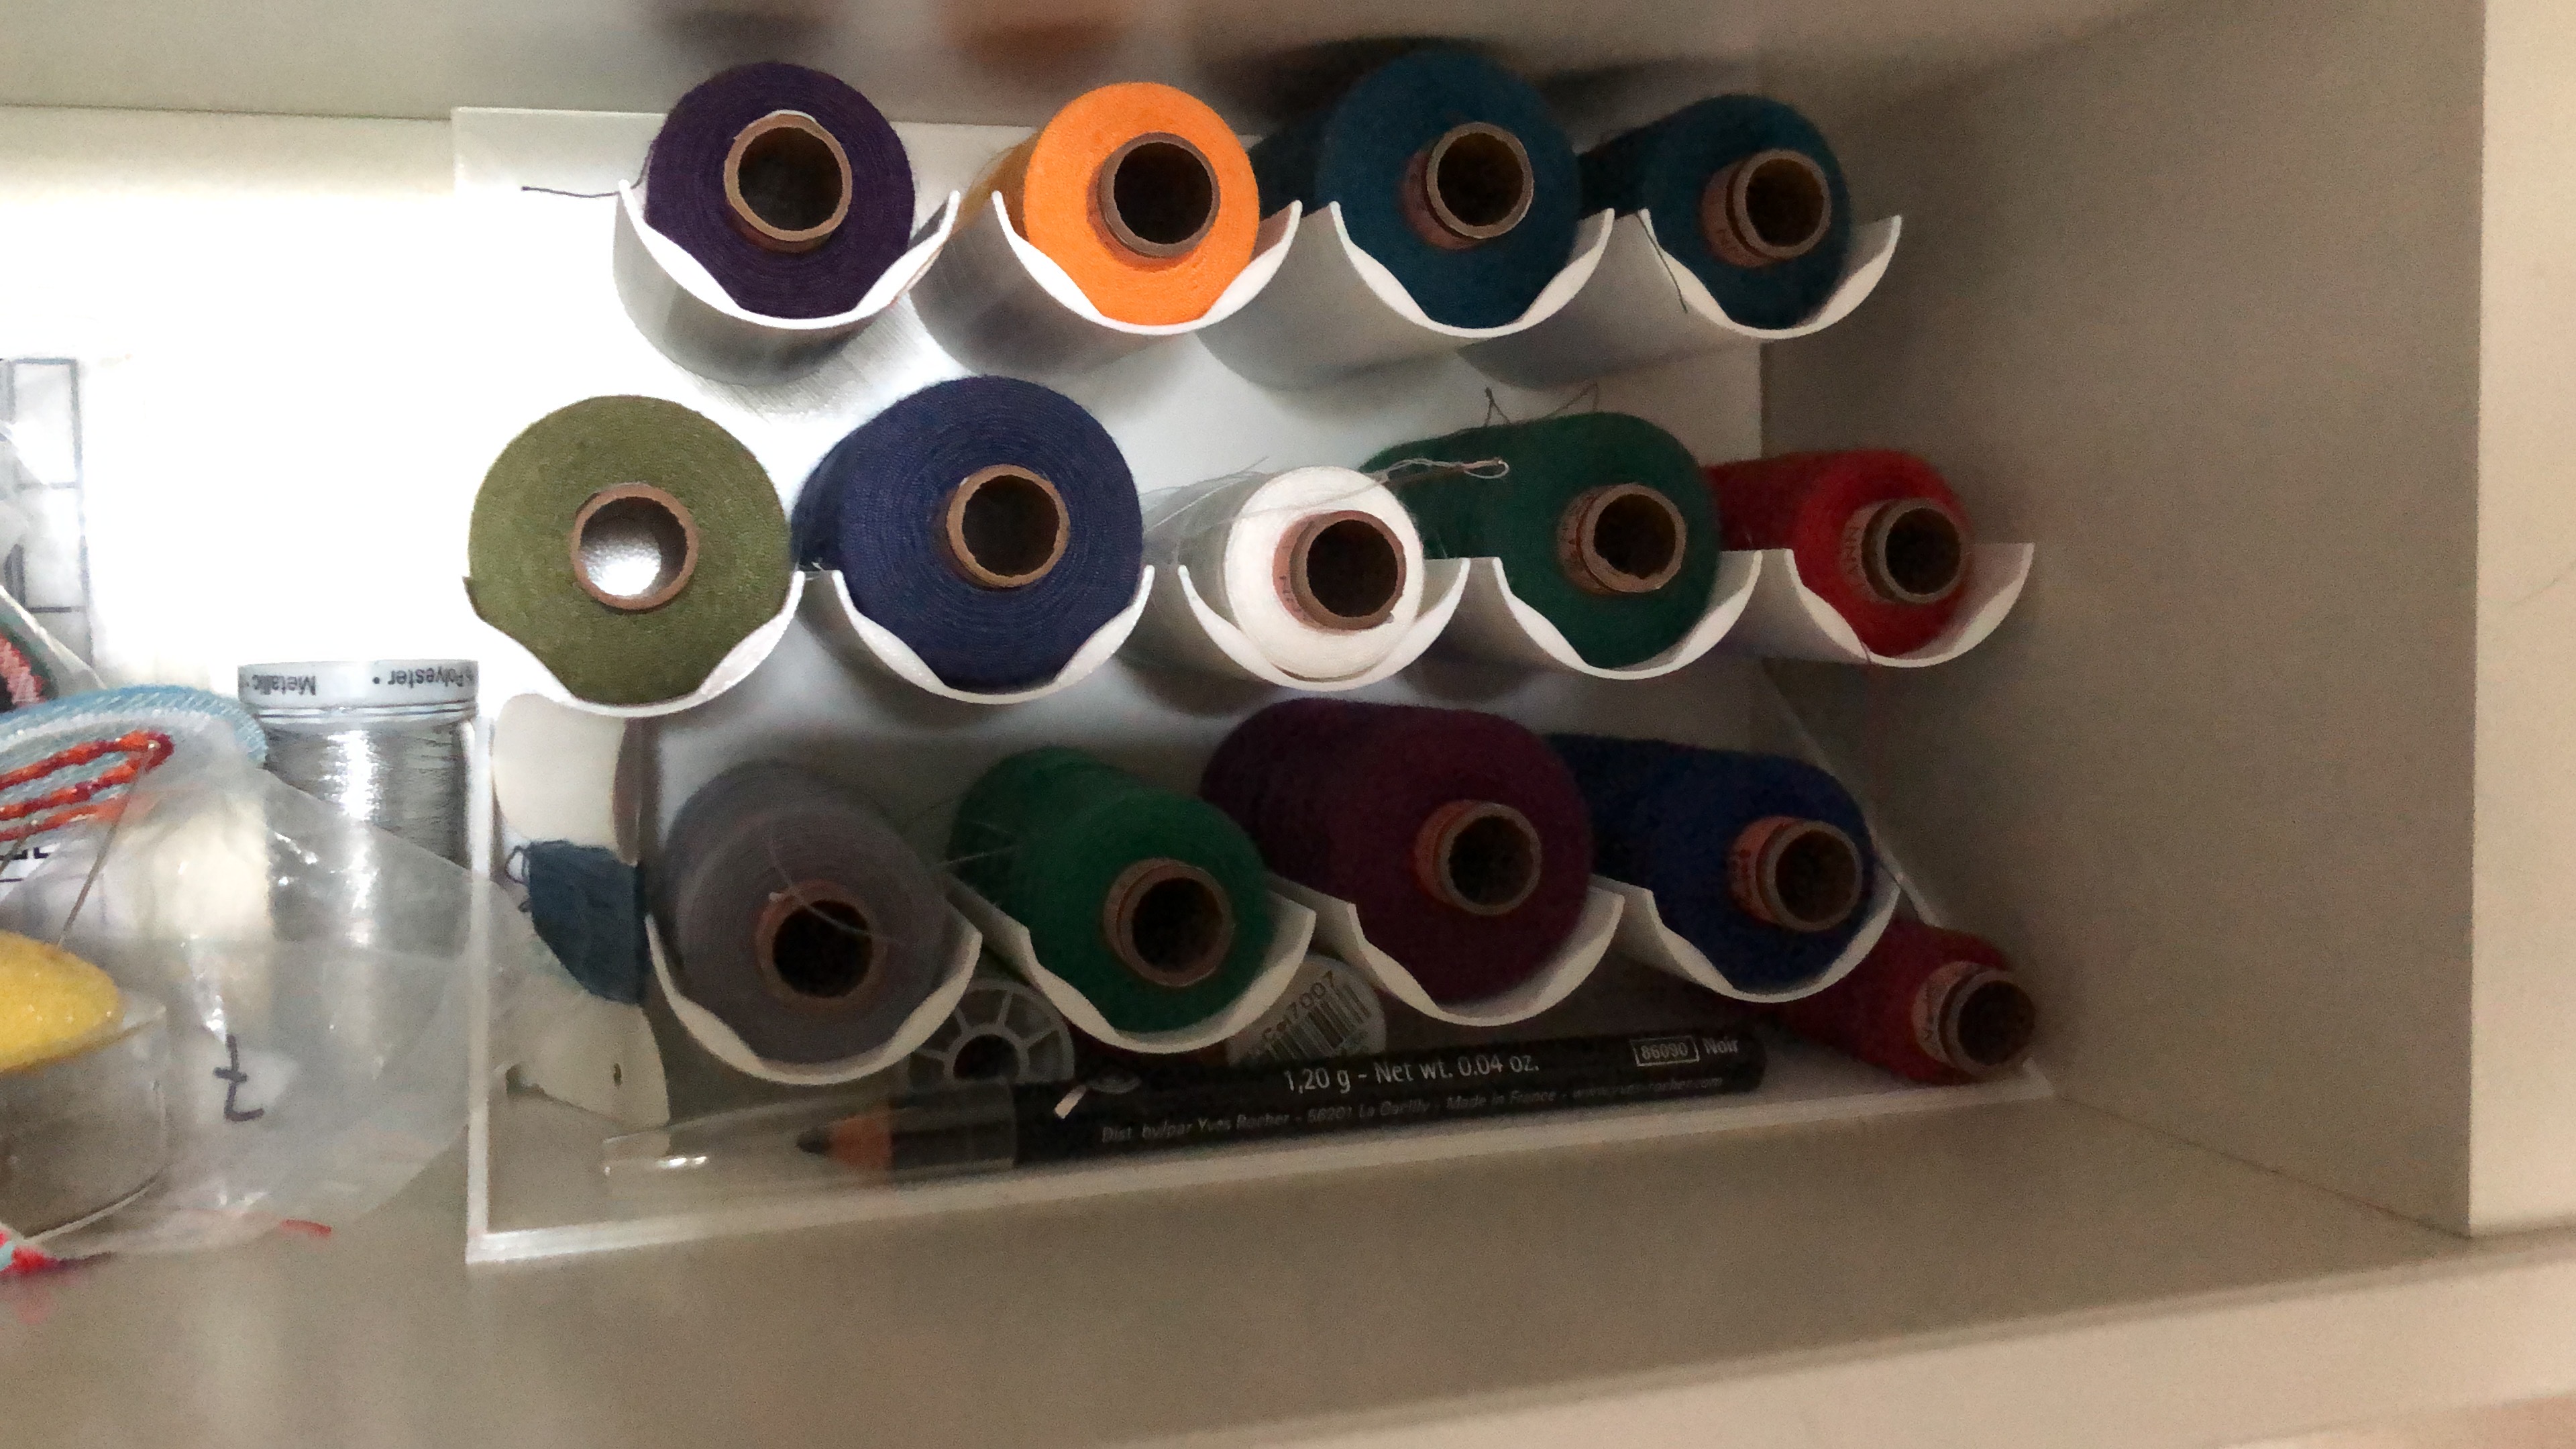 Thread spool organizer for shelf